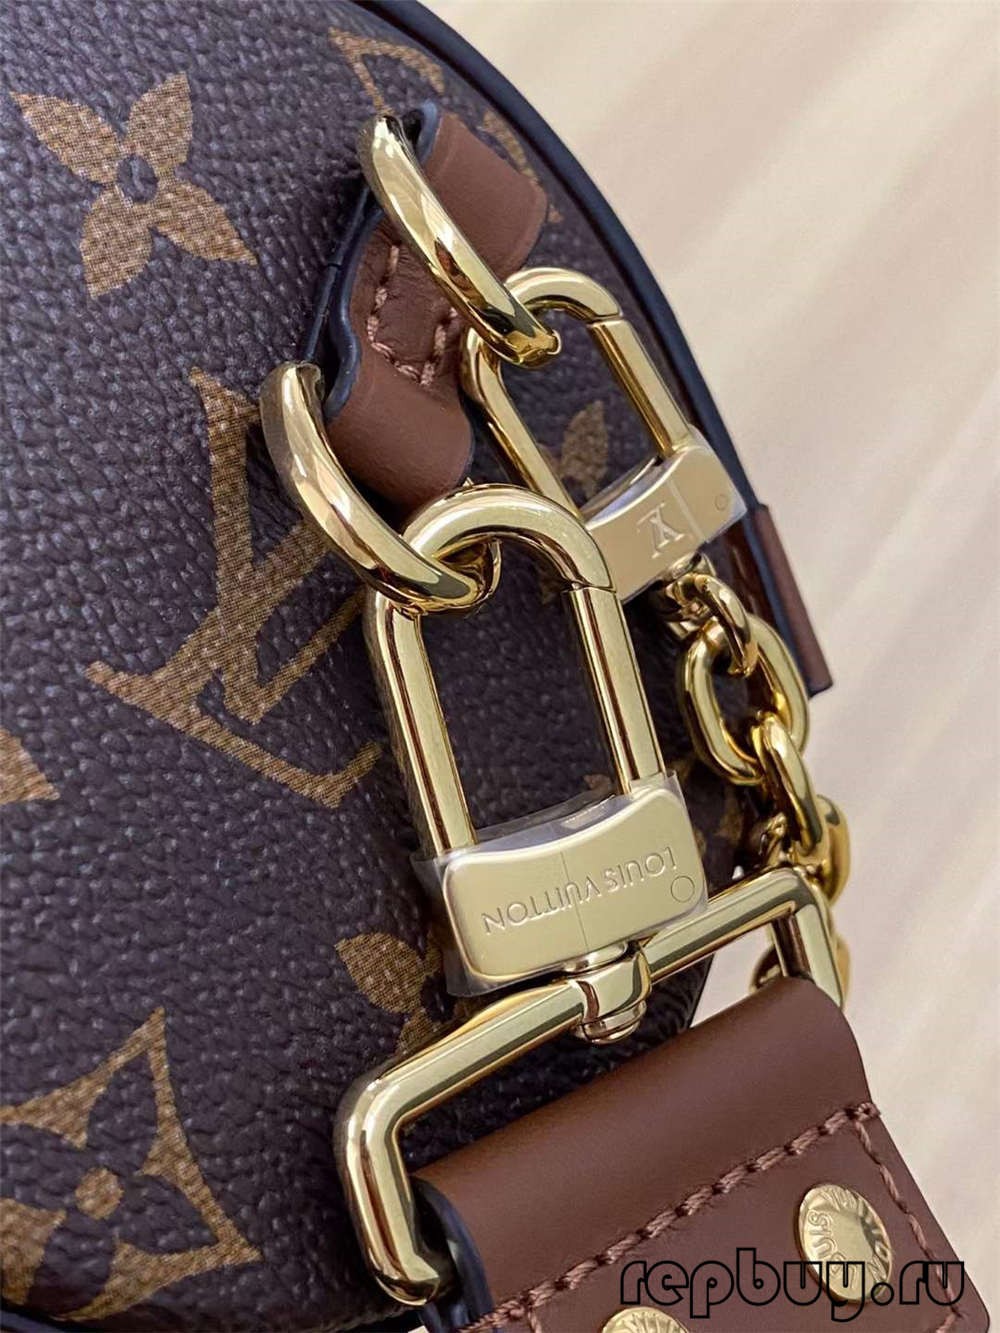 Louis Vuitton M57835 PAPILLON TRUNK túi sao chép chất lượng hàng đầu (Cập nhật năm 2022) - Chất lượng tốt nhất Túi Louis Vuitton giả Cửa hàng trực tuyến, túi thiết kế bản sao ru